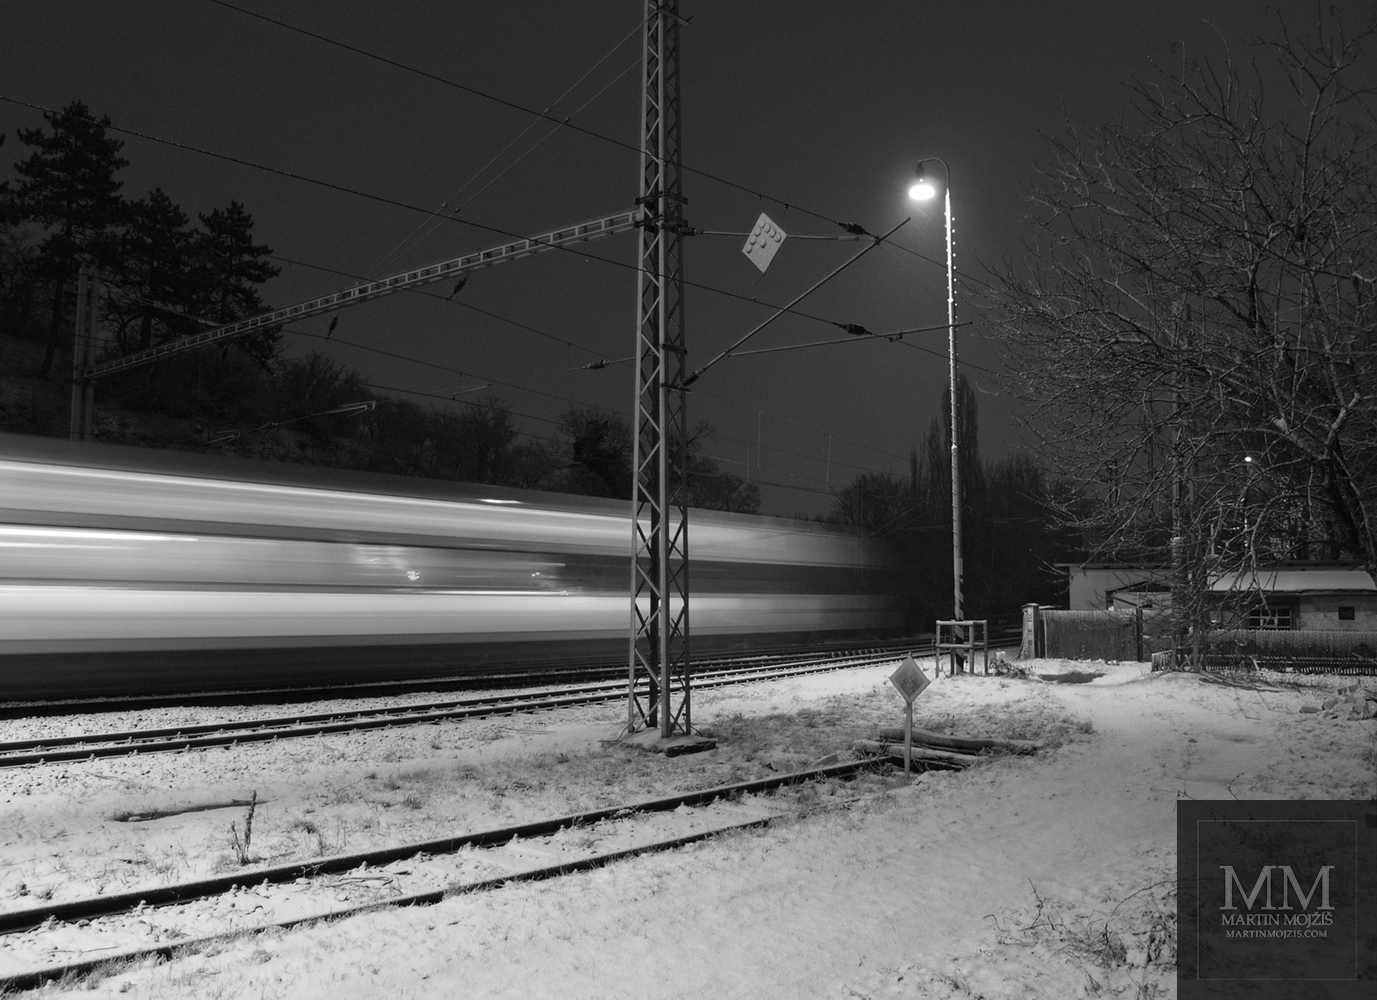 Rychle projíždějící vlak, zimní zasněžené nádraží. Fotografie s názvem NOČNÍ EXPRES.